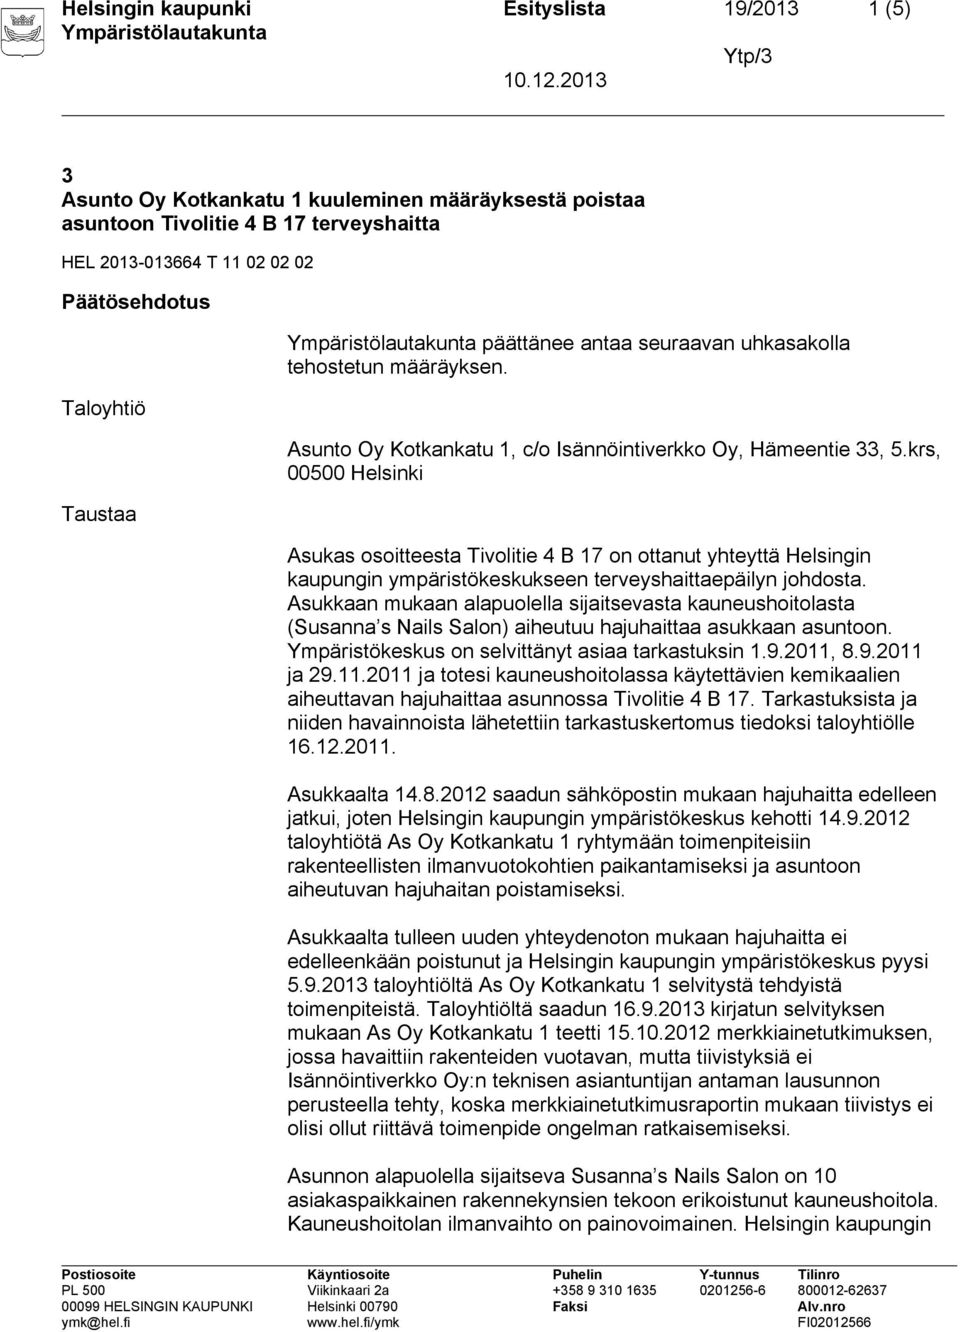 krs, 00500 Helsinki Asukas osoitteesta Tivolitie 4 B 17 on ottanut yhteyttä Helsingin kaupungin ympäristökeskukseen terveyshaittaepäilyn johdosta.